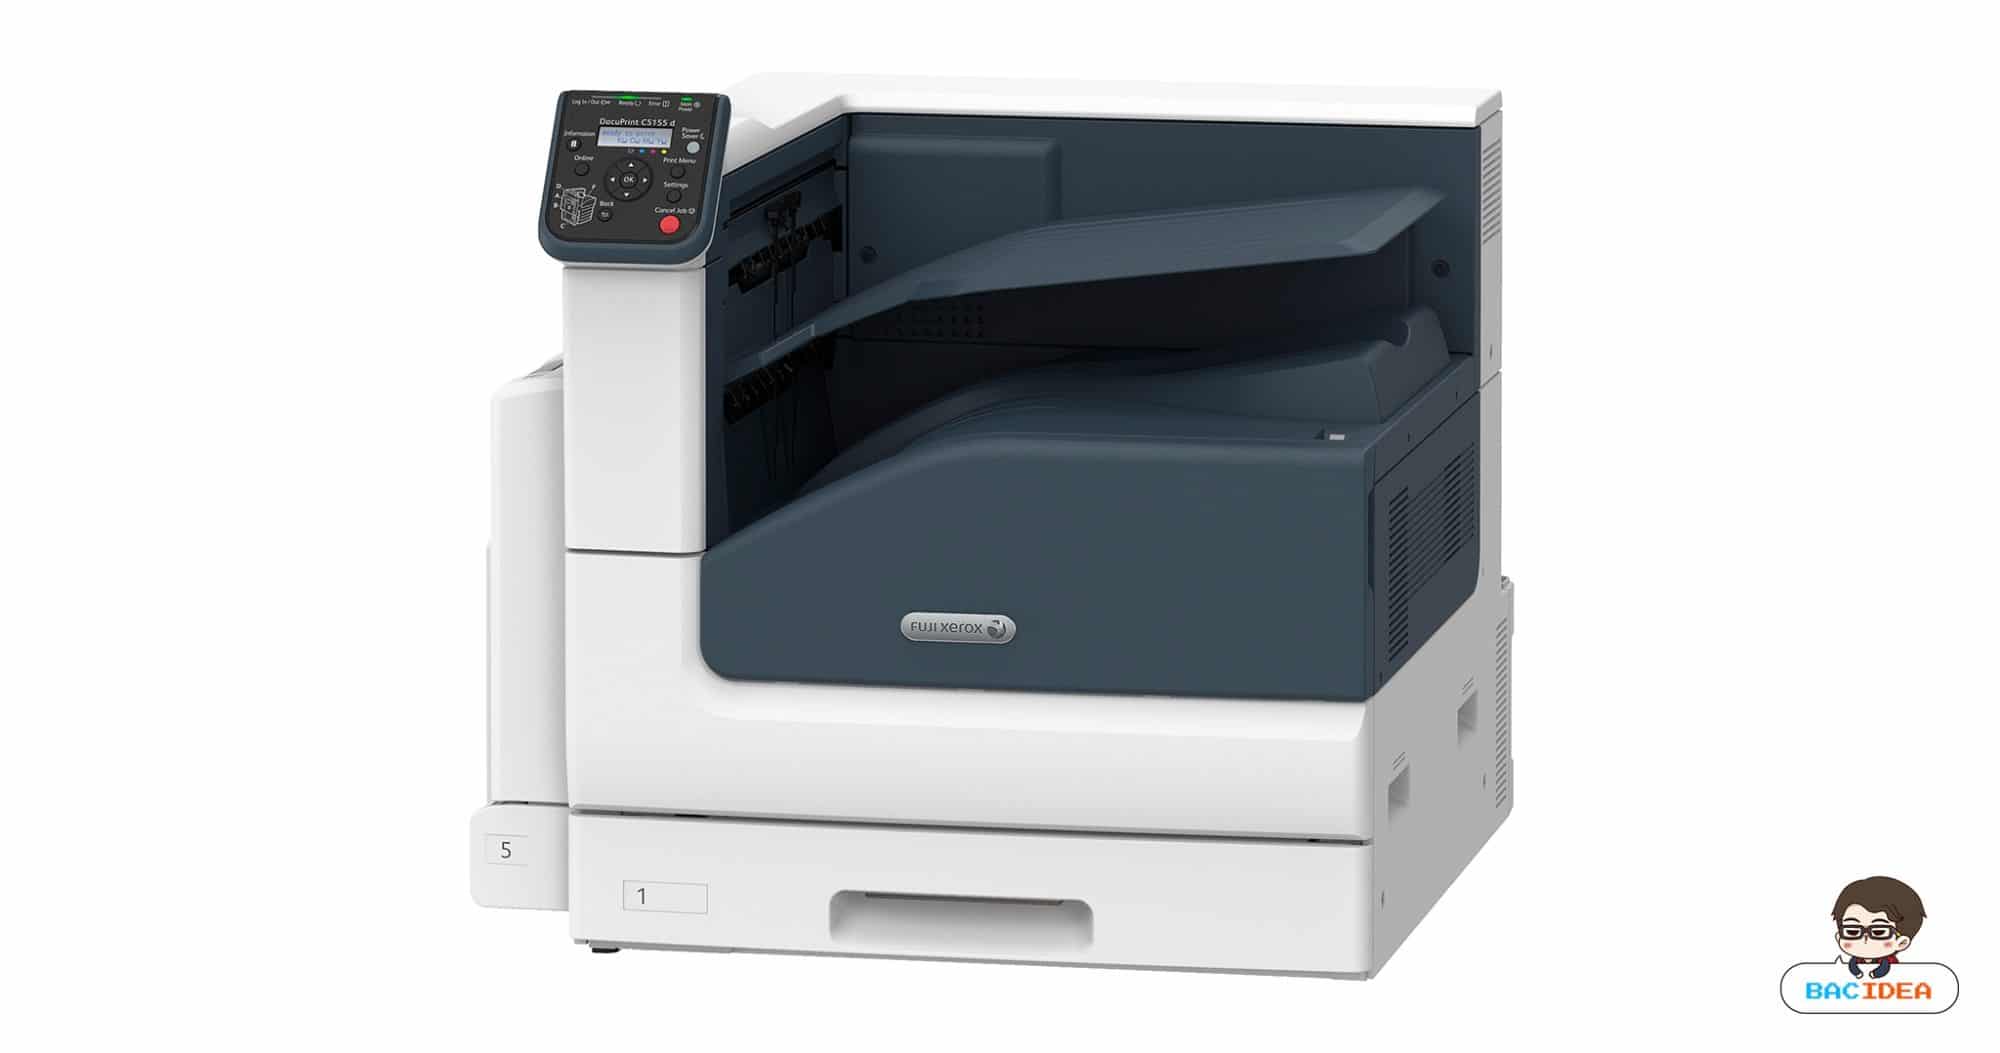 Fuji Xerox เปิดตัวเครื่องพิมพ์สี A3 รุ่น DocuPrint C5155 d ระดับไฮเอนด์ รองรับการใช้งานในออฟฟิศและงานพิมพ์ ออนดีมานด์ 1